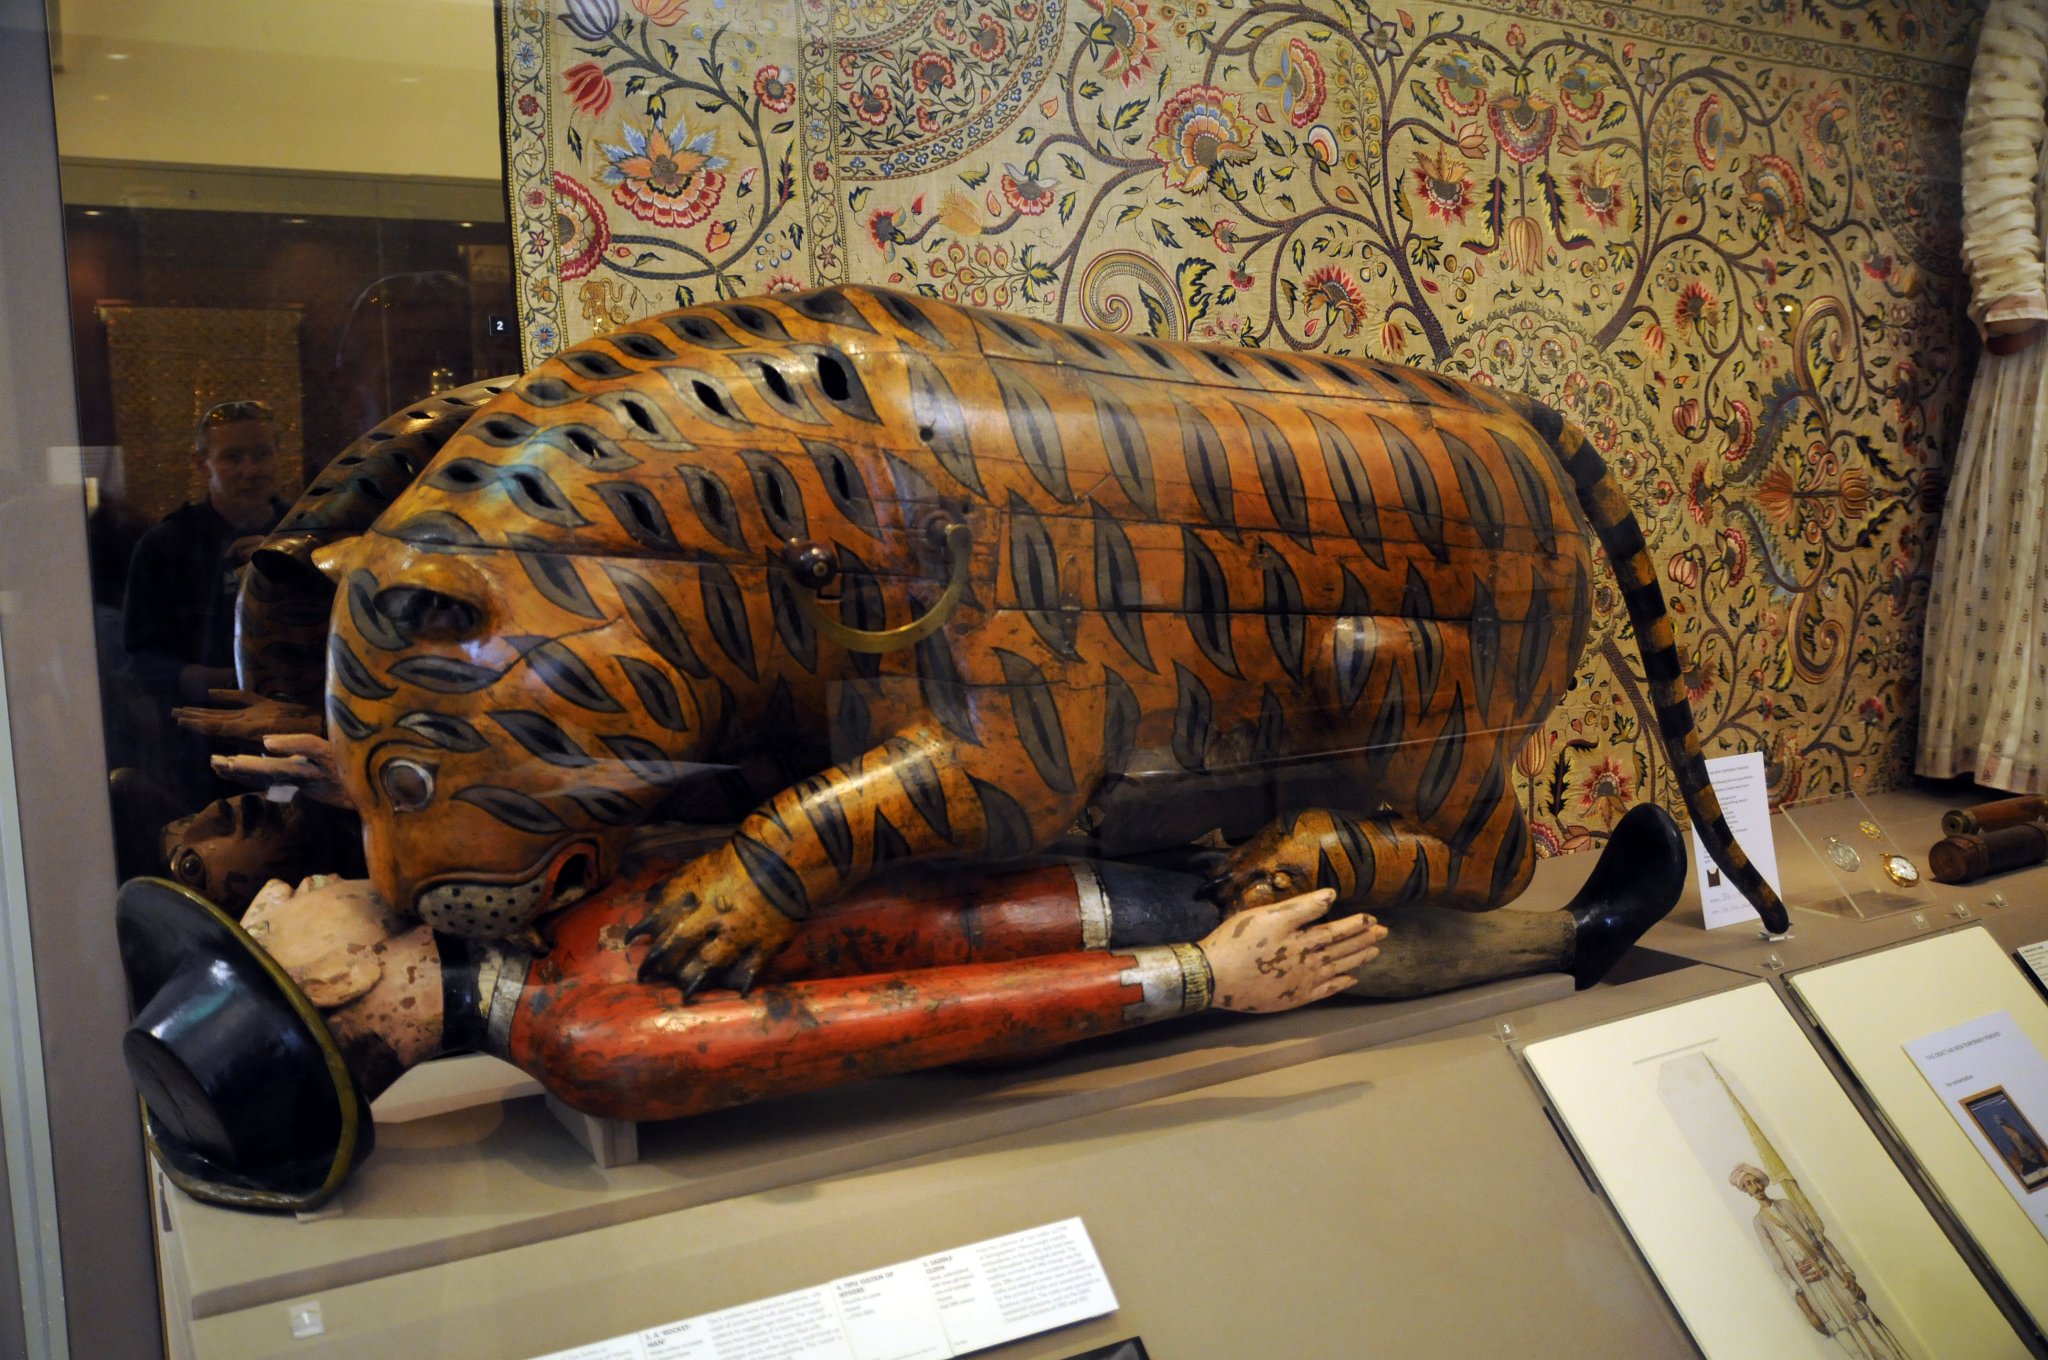 DSC_7973_1.jpg - Muzeum vlastní nejúchvatnější sbírku indického umění včetně slavné mechanické hračky v podobě tygra žeroucího Evropana, kterou si nechal vyrobit indický sultán Tipu asi v roce 1793. Klika umístěná v rameni tygra dala do pohybu mněchy umístěné v těle tygra, které pak následně vydávaly zvuky podobné vrčení tygra a  lidským vykřikům. Intenzita výkřiků se měnila v zásvislosti na posunování levé ruky oběti k ústúm a od úst. Další dvojice měchů spojených se stejnou rukojetí dává vzudch pro miniaturní varhany složené z 18 trubek. Uvnitř těla tyhra po odklopená božní stěny směrem k ocasu se skrývají tlačítka ze slonoviny, kterými se varhany ovládaly. 